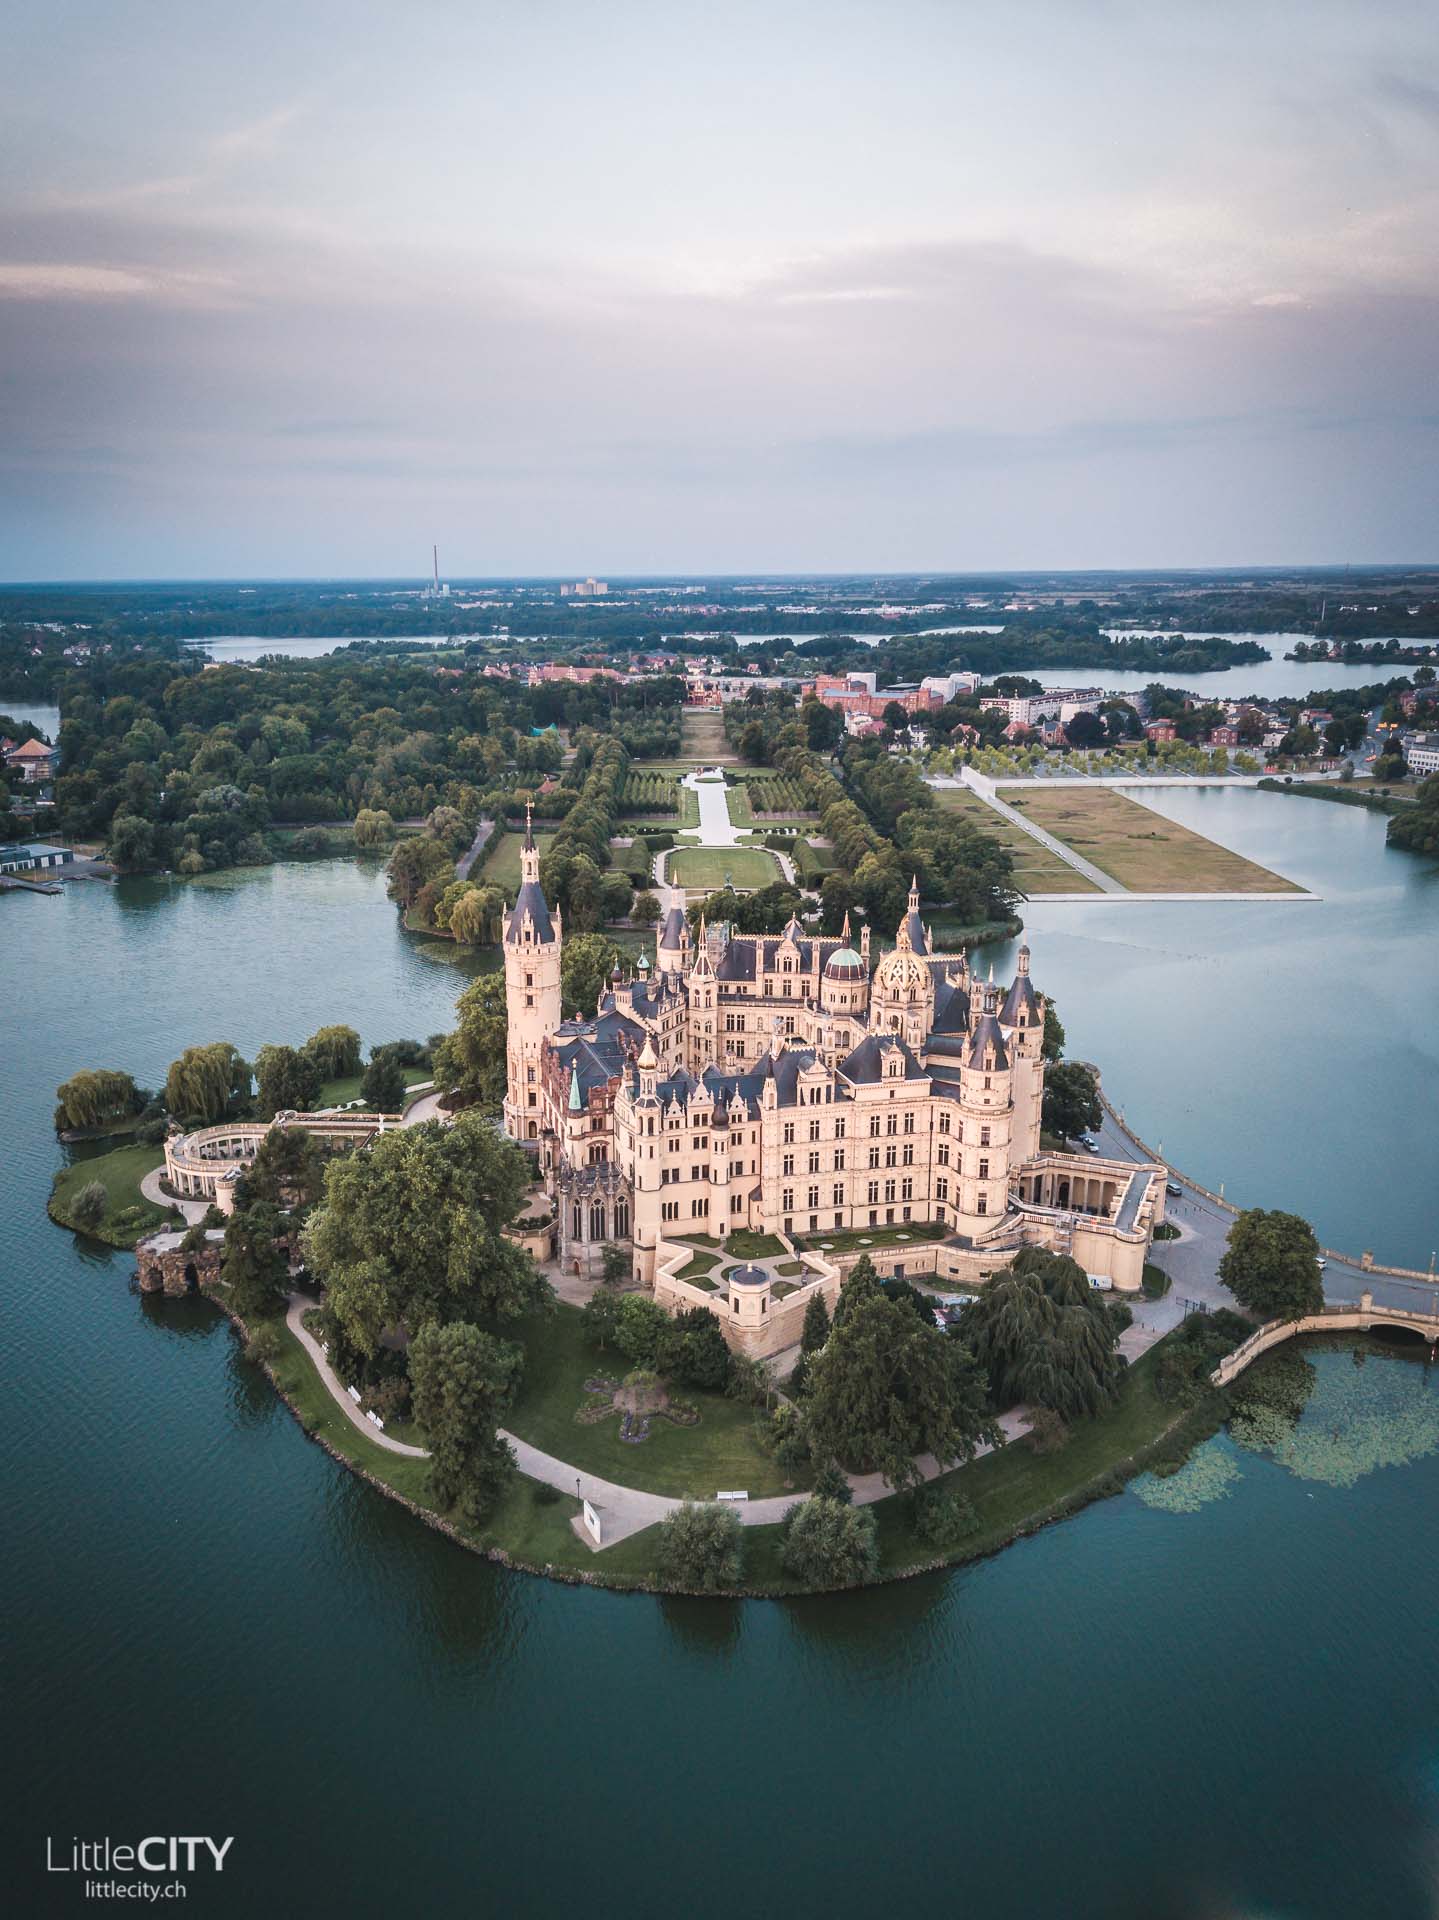 Schloss Schwerin Märchenschloss auf einer Insel